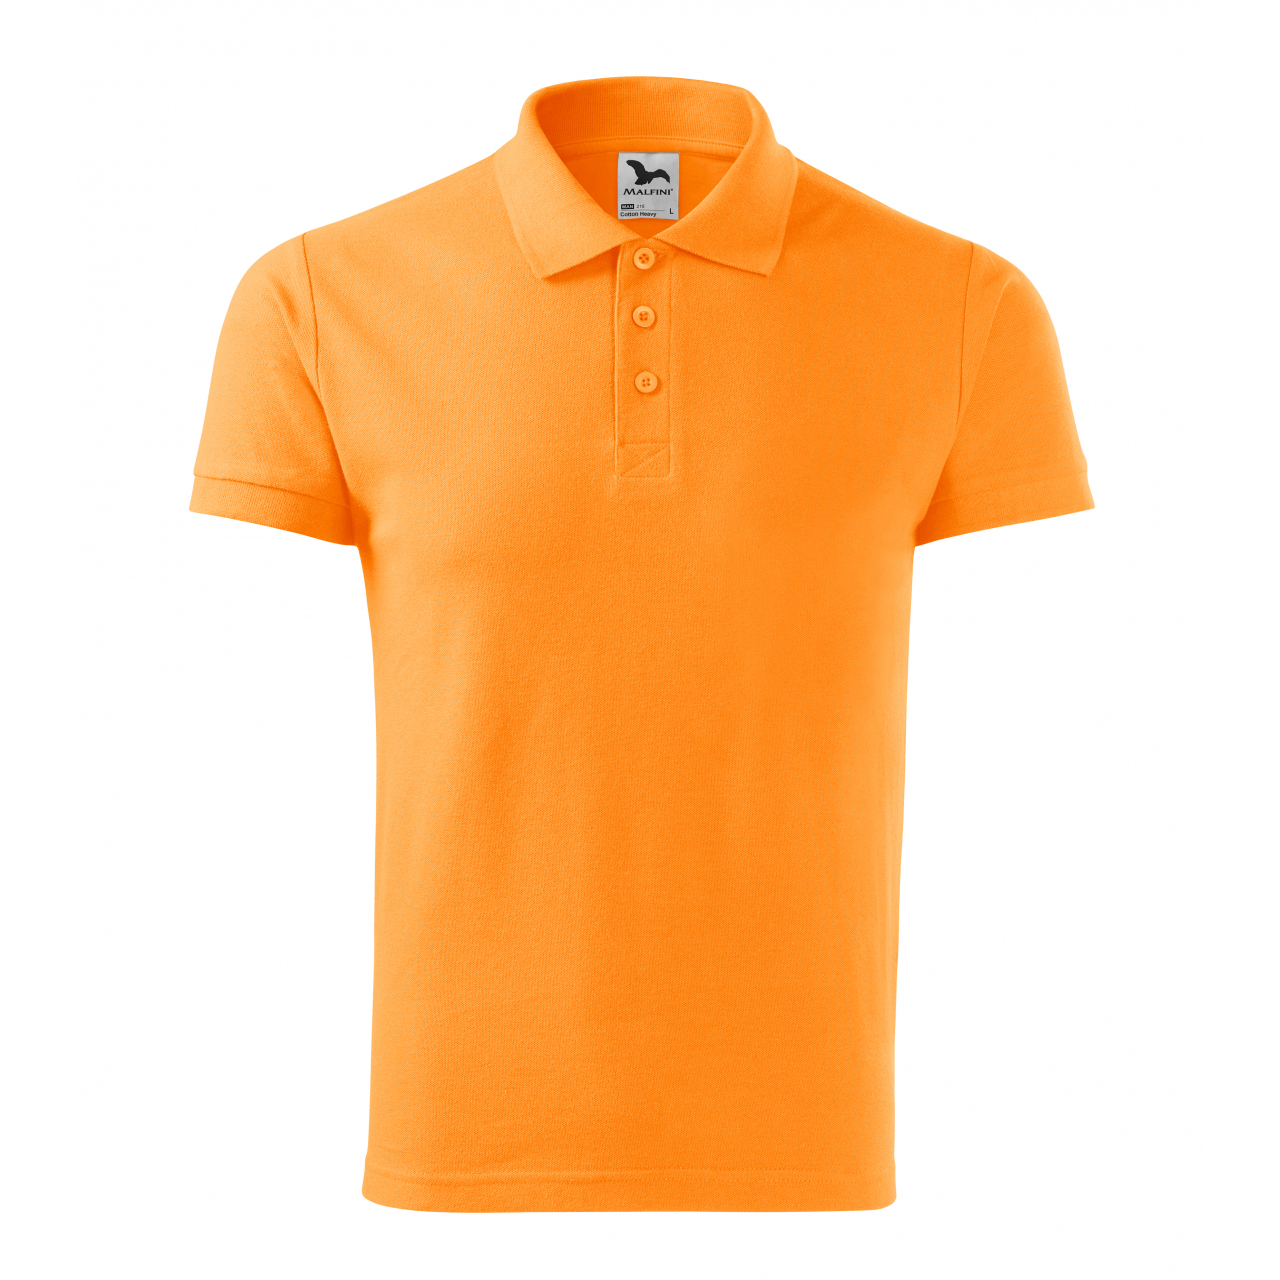 Polokošile pánská Malfini Cotton Heavy - světle oranžová, XL